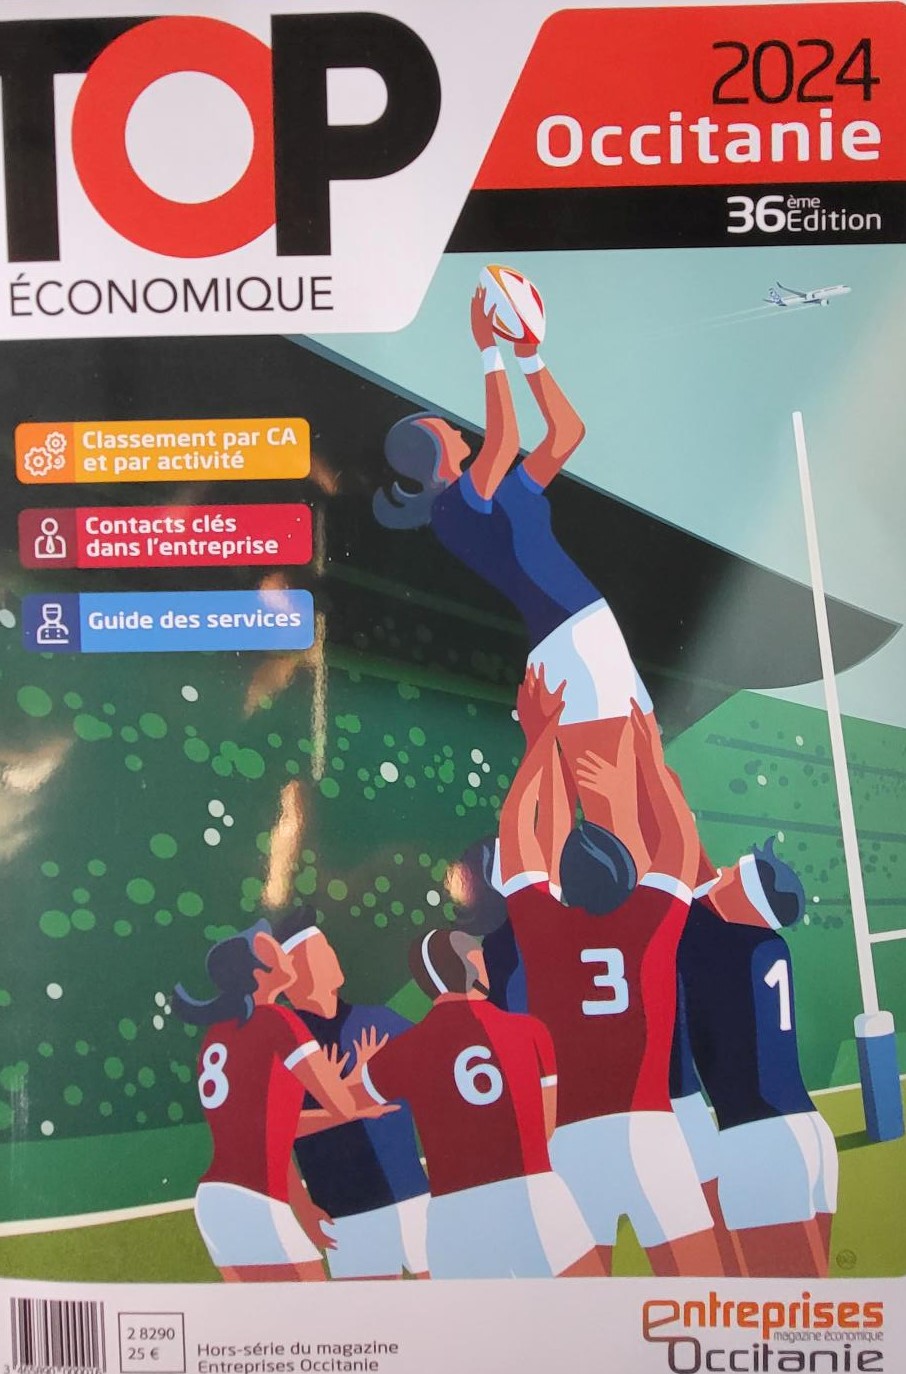 Le Top Eco 2024, qui référence près de 1200 entreprises, est placé sur le thème du rugby. (Photo : Anthony Assémat - Entreprises Occitanie)